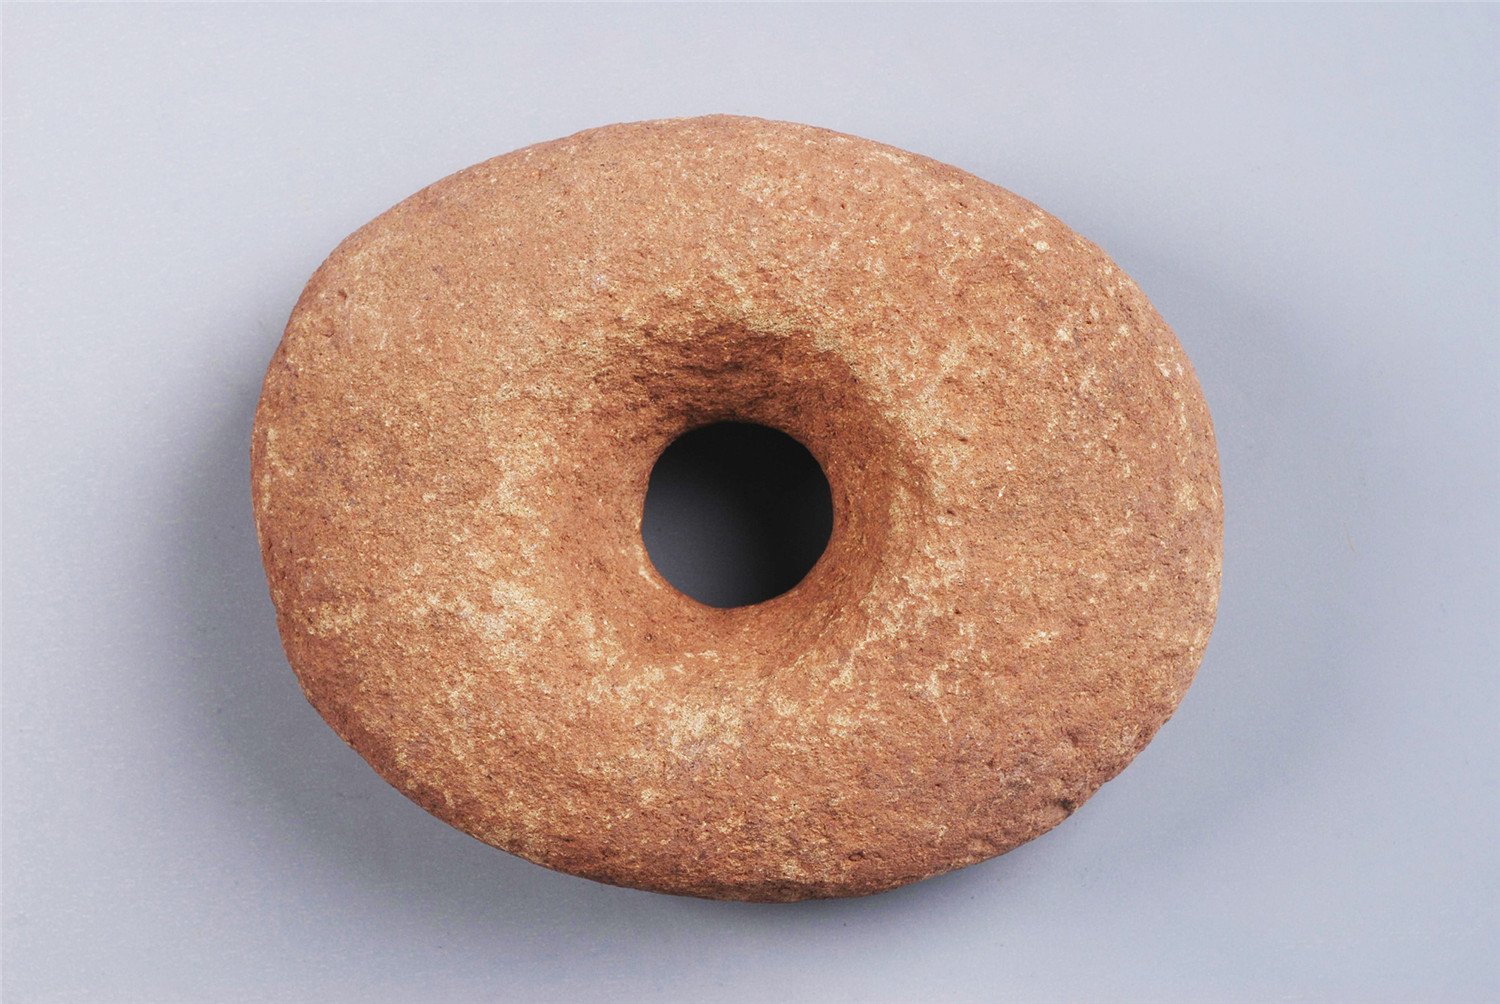 原始时期穿孔石器-桂北民俗博物馆藏